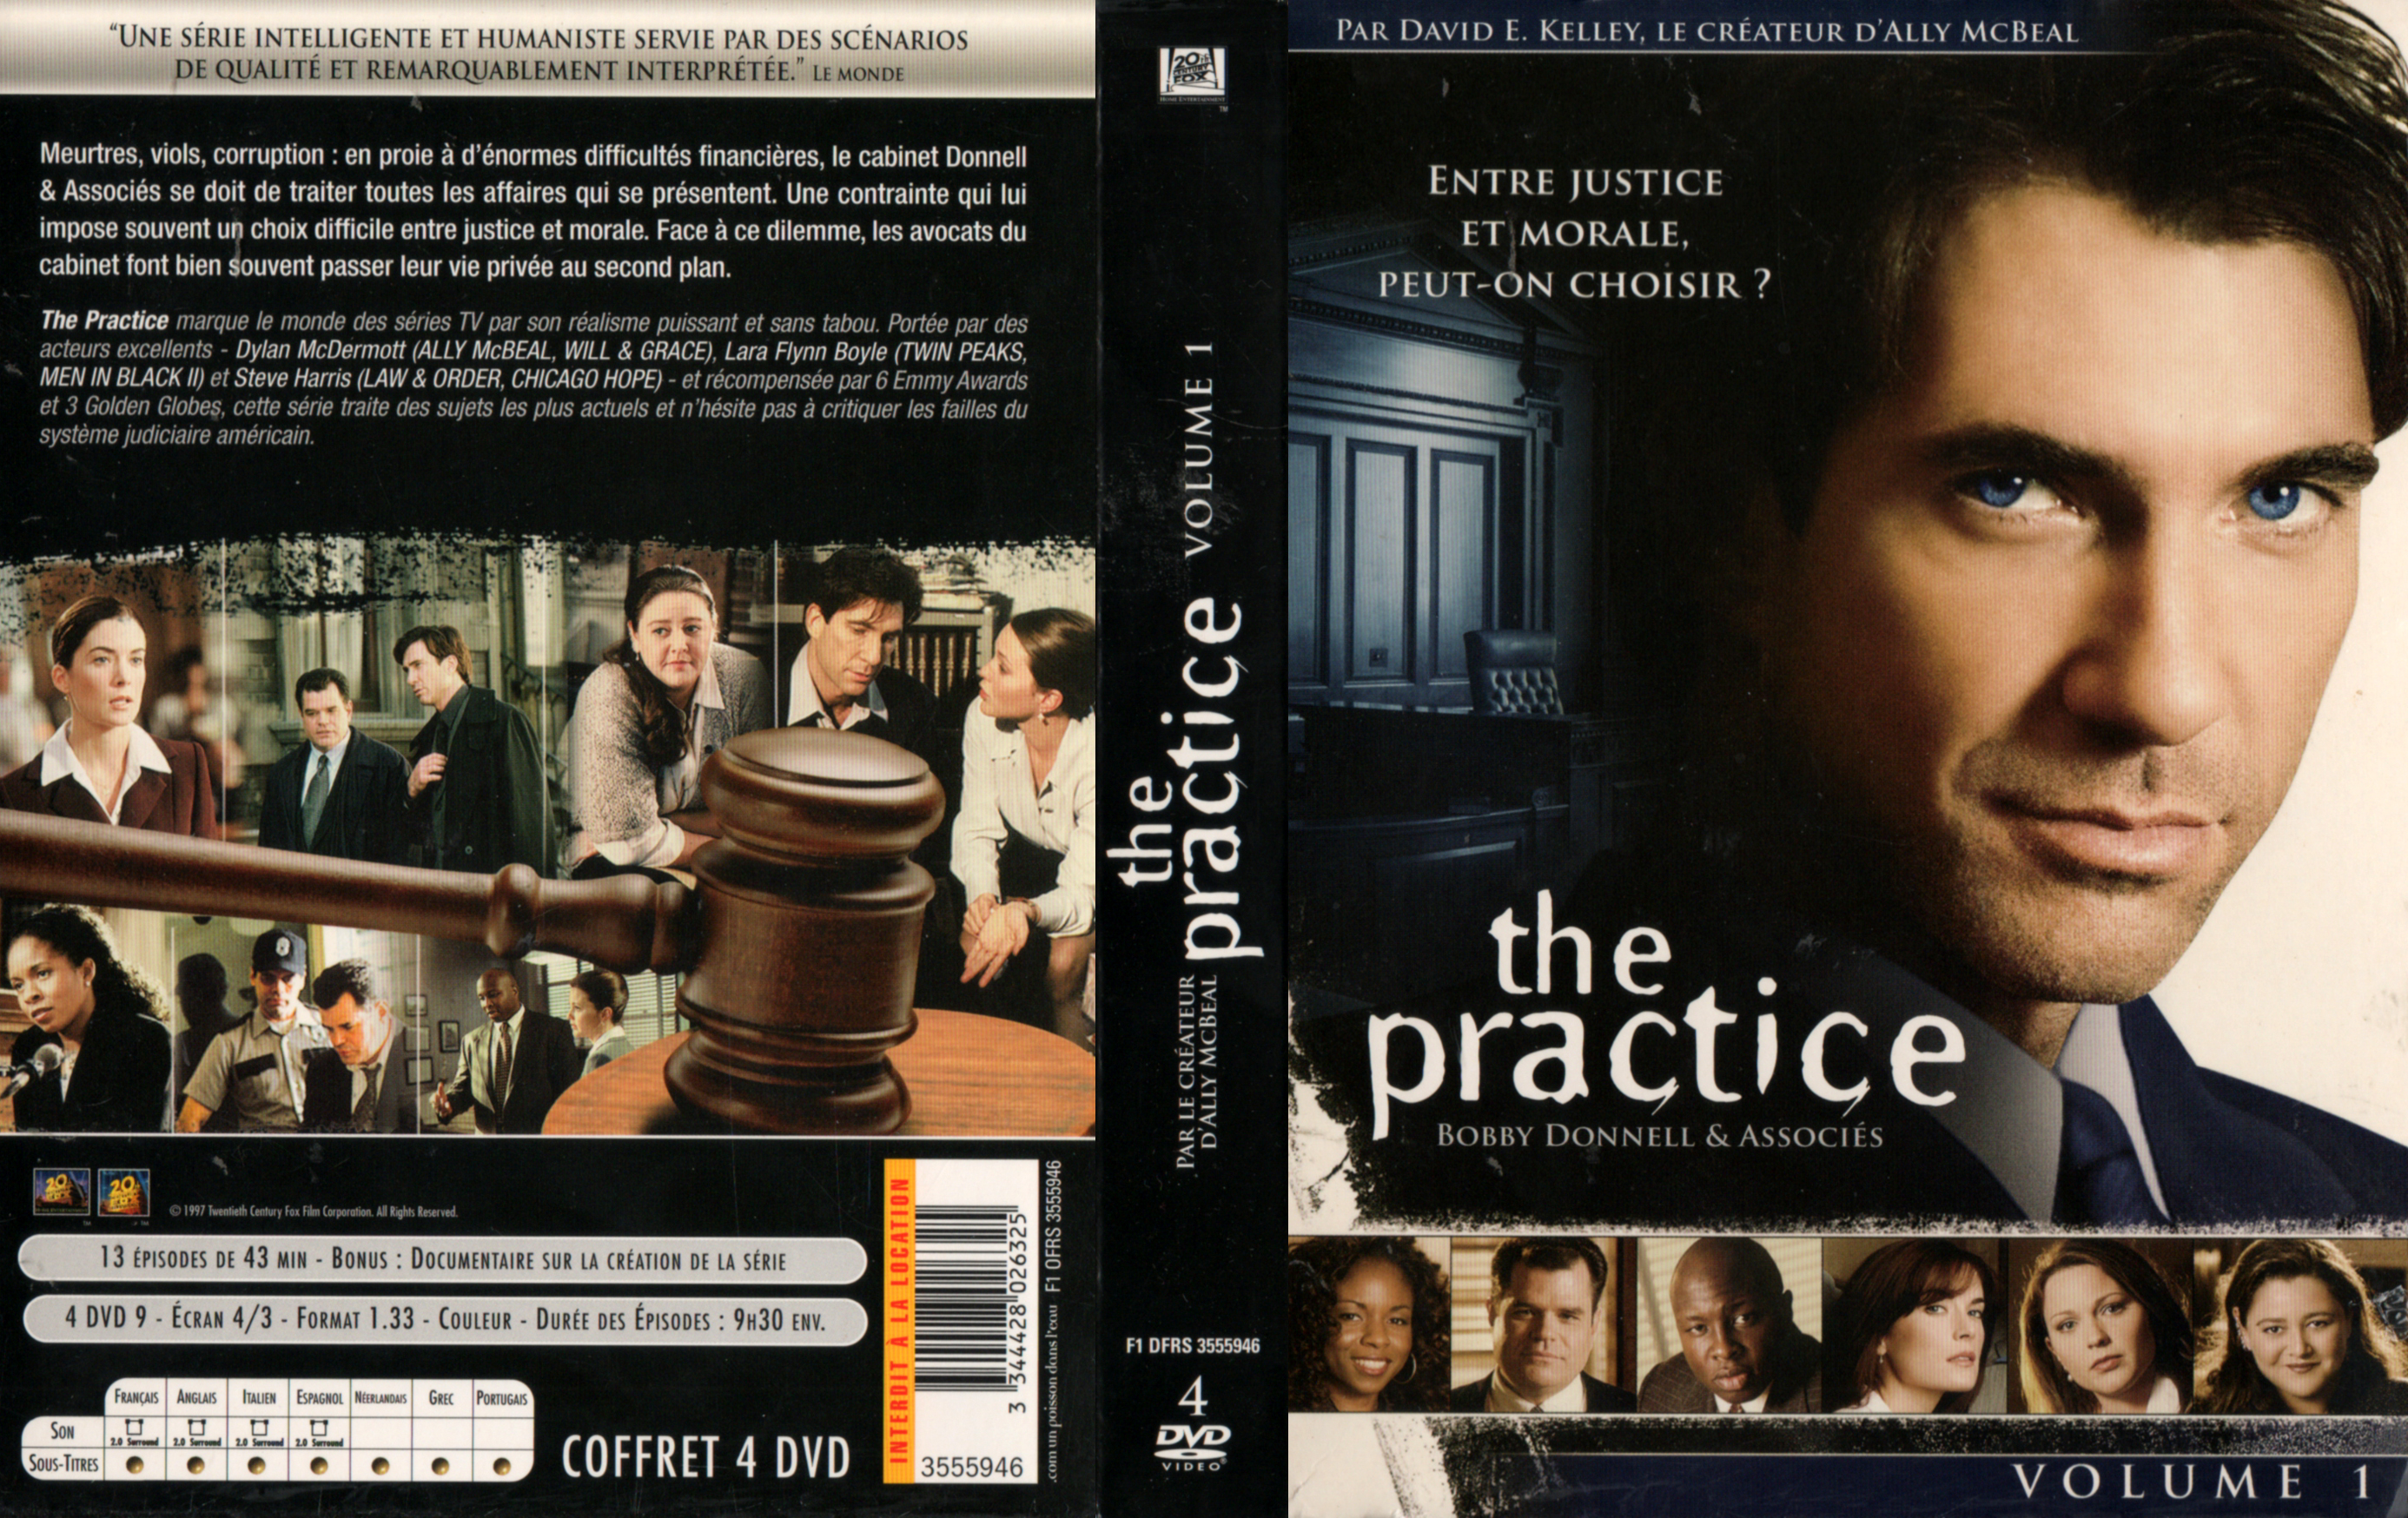 Jaquette DVD The practice vol 1 COFFRET